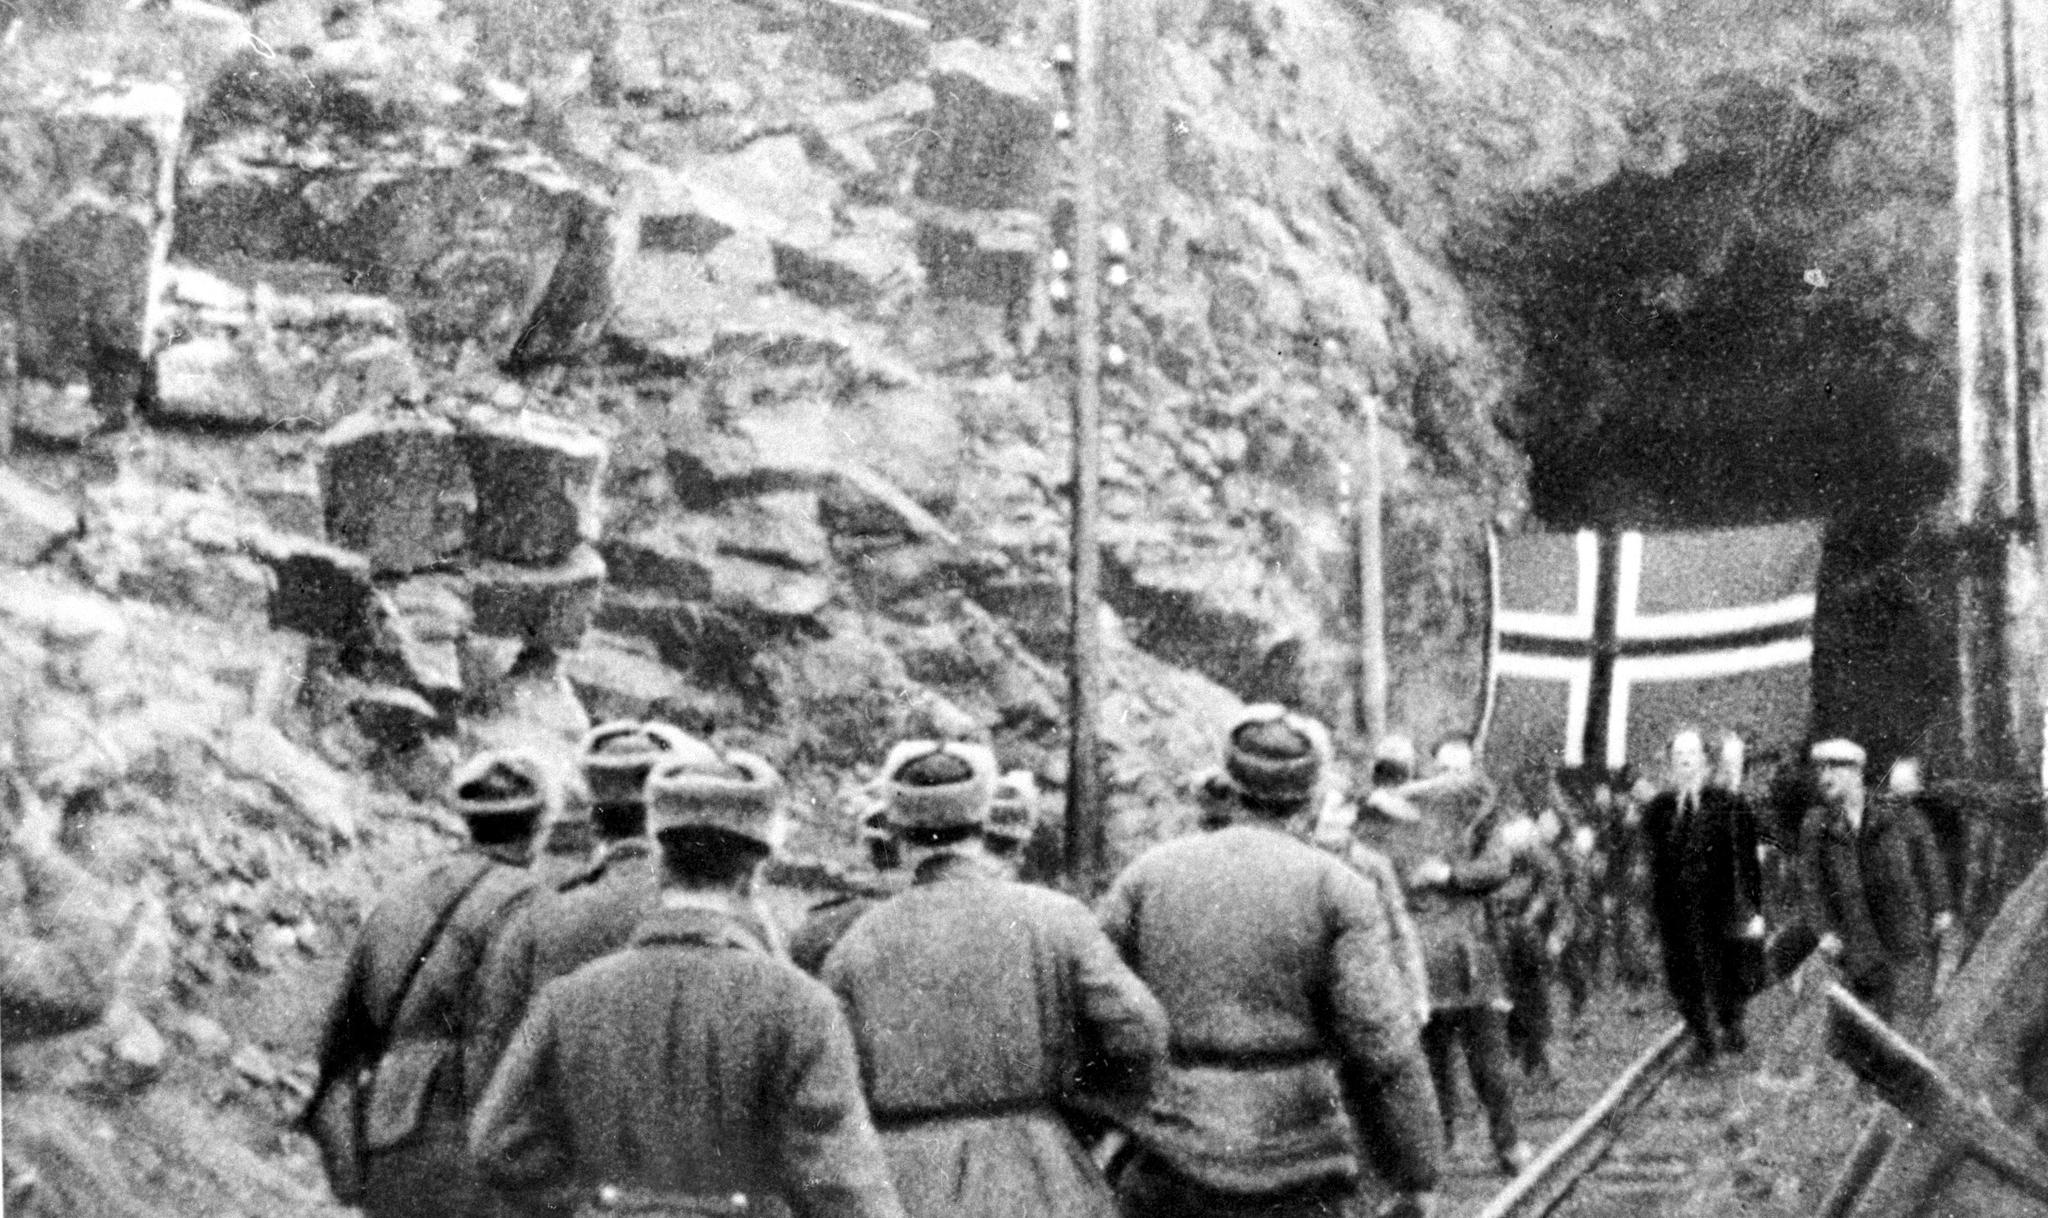 Øst-Finnmark ble frigitt av soldater fra Den røde arme i oktober 1944. Her møter sovjetrussere nordmenn som hadde skjult seg i Bjørnevatn gruver i Kirkenes. Men det var ikke sovjeterne i Tana som drev tyskerne tilbake til Lyngen, skriver kronikkforfatteren.